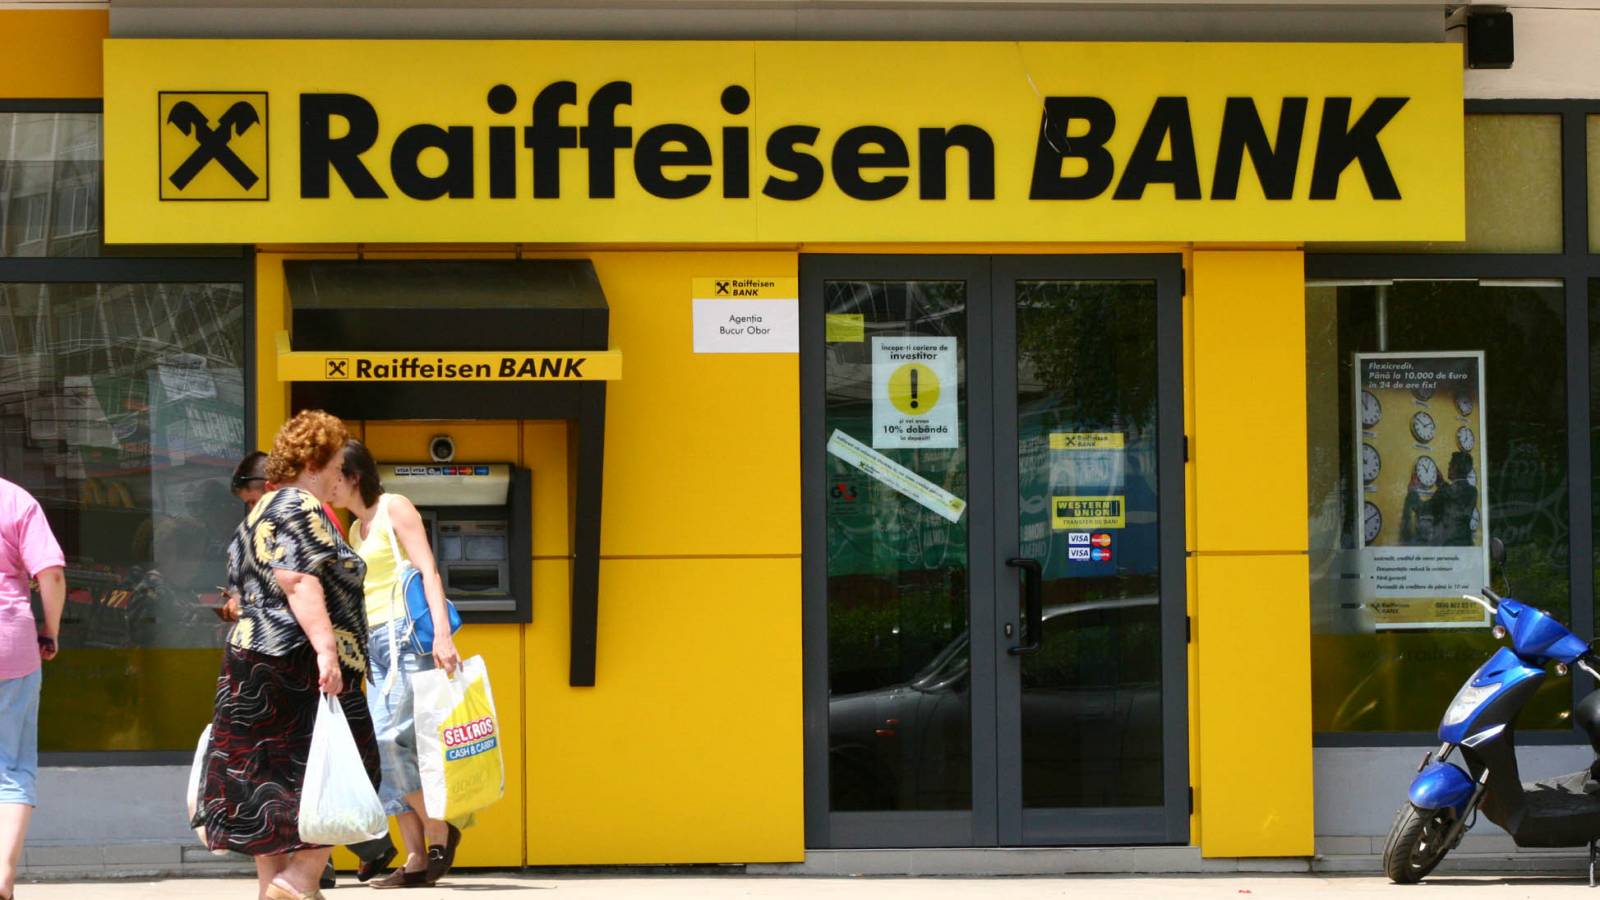 Utilidades del banco Raiffeisen